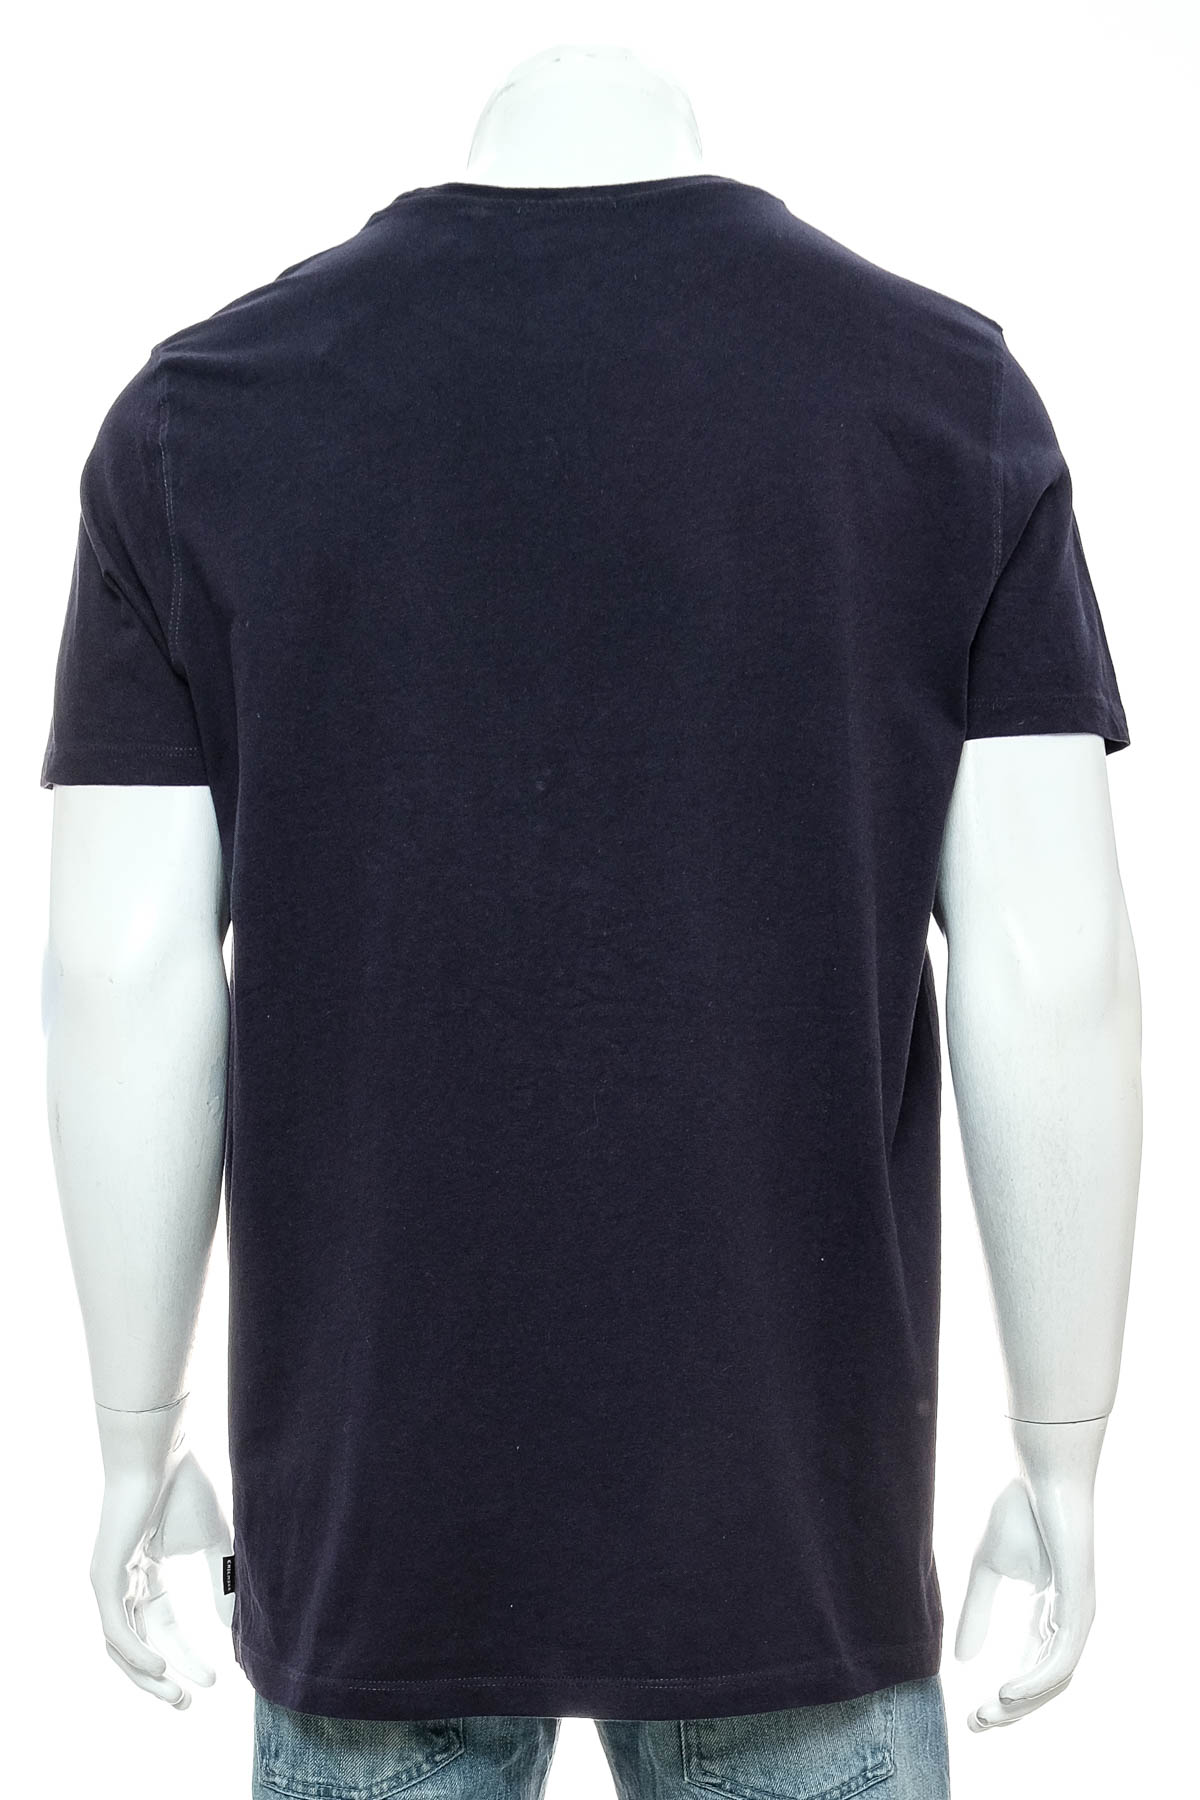 Ανδρικό μπλουζάκι - Chiemsee - 1